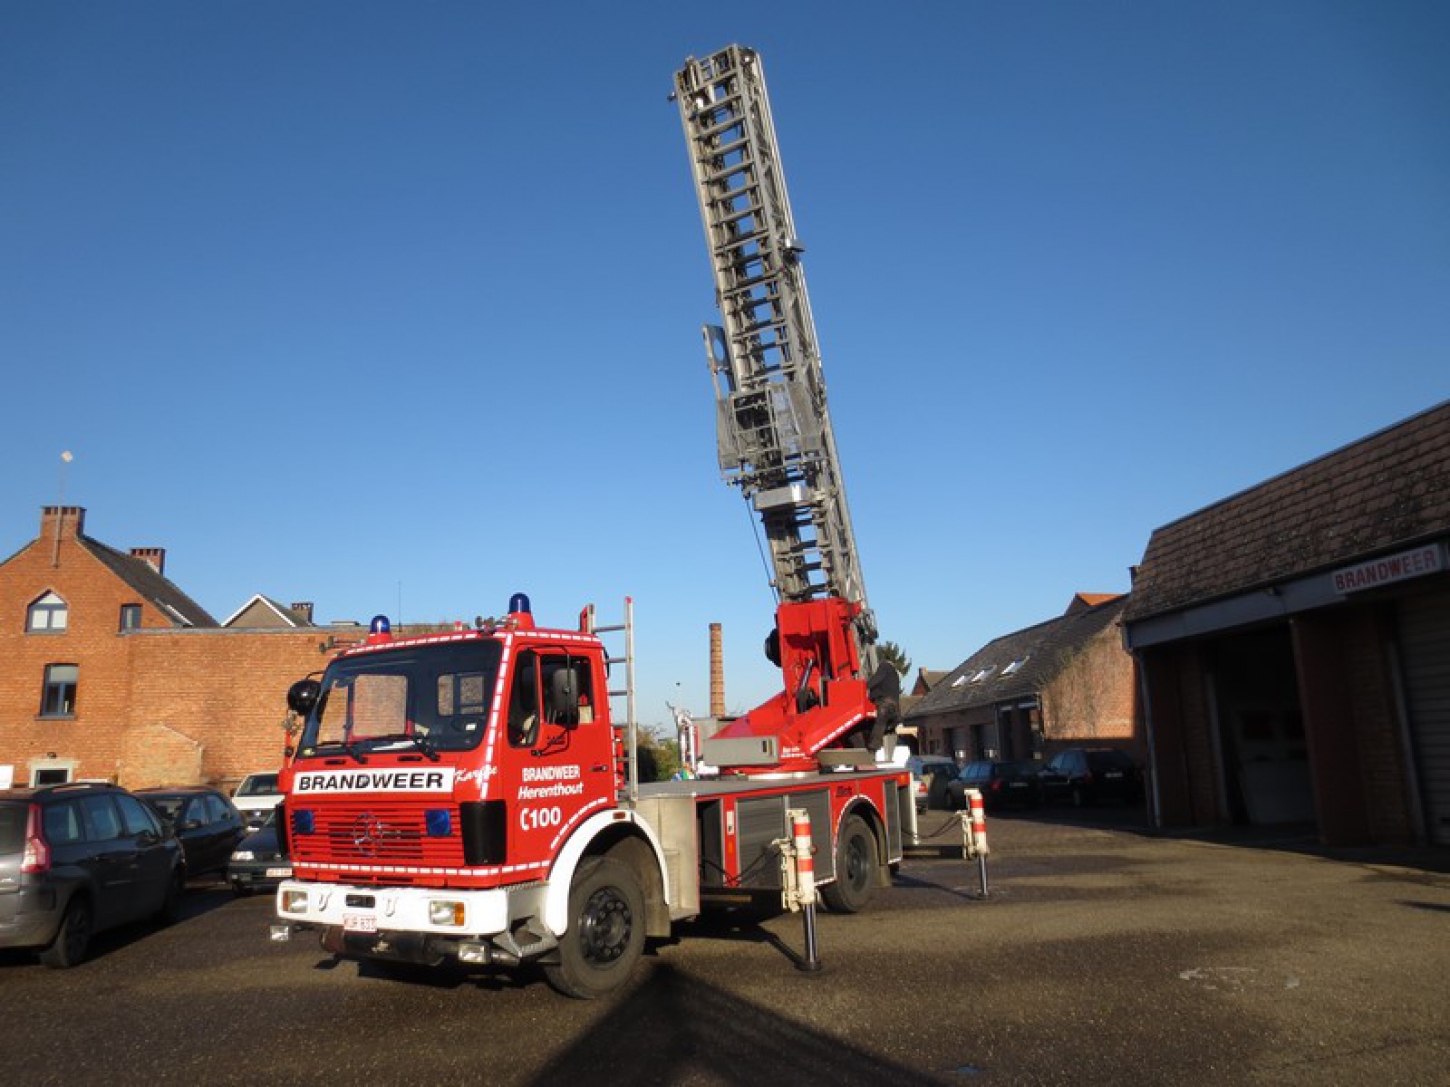 Een brandweerwagen kan ook beschikken over een hoogwerker om snel te kunnen ingrijpen bij noodgevallen op hoogte, een keuring is hier verplicht.